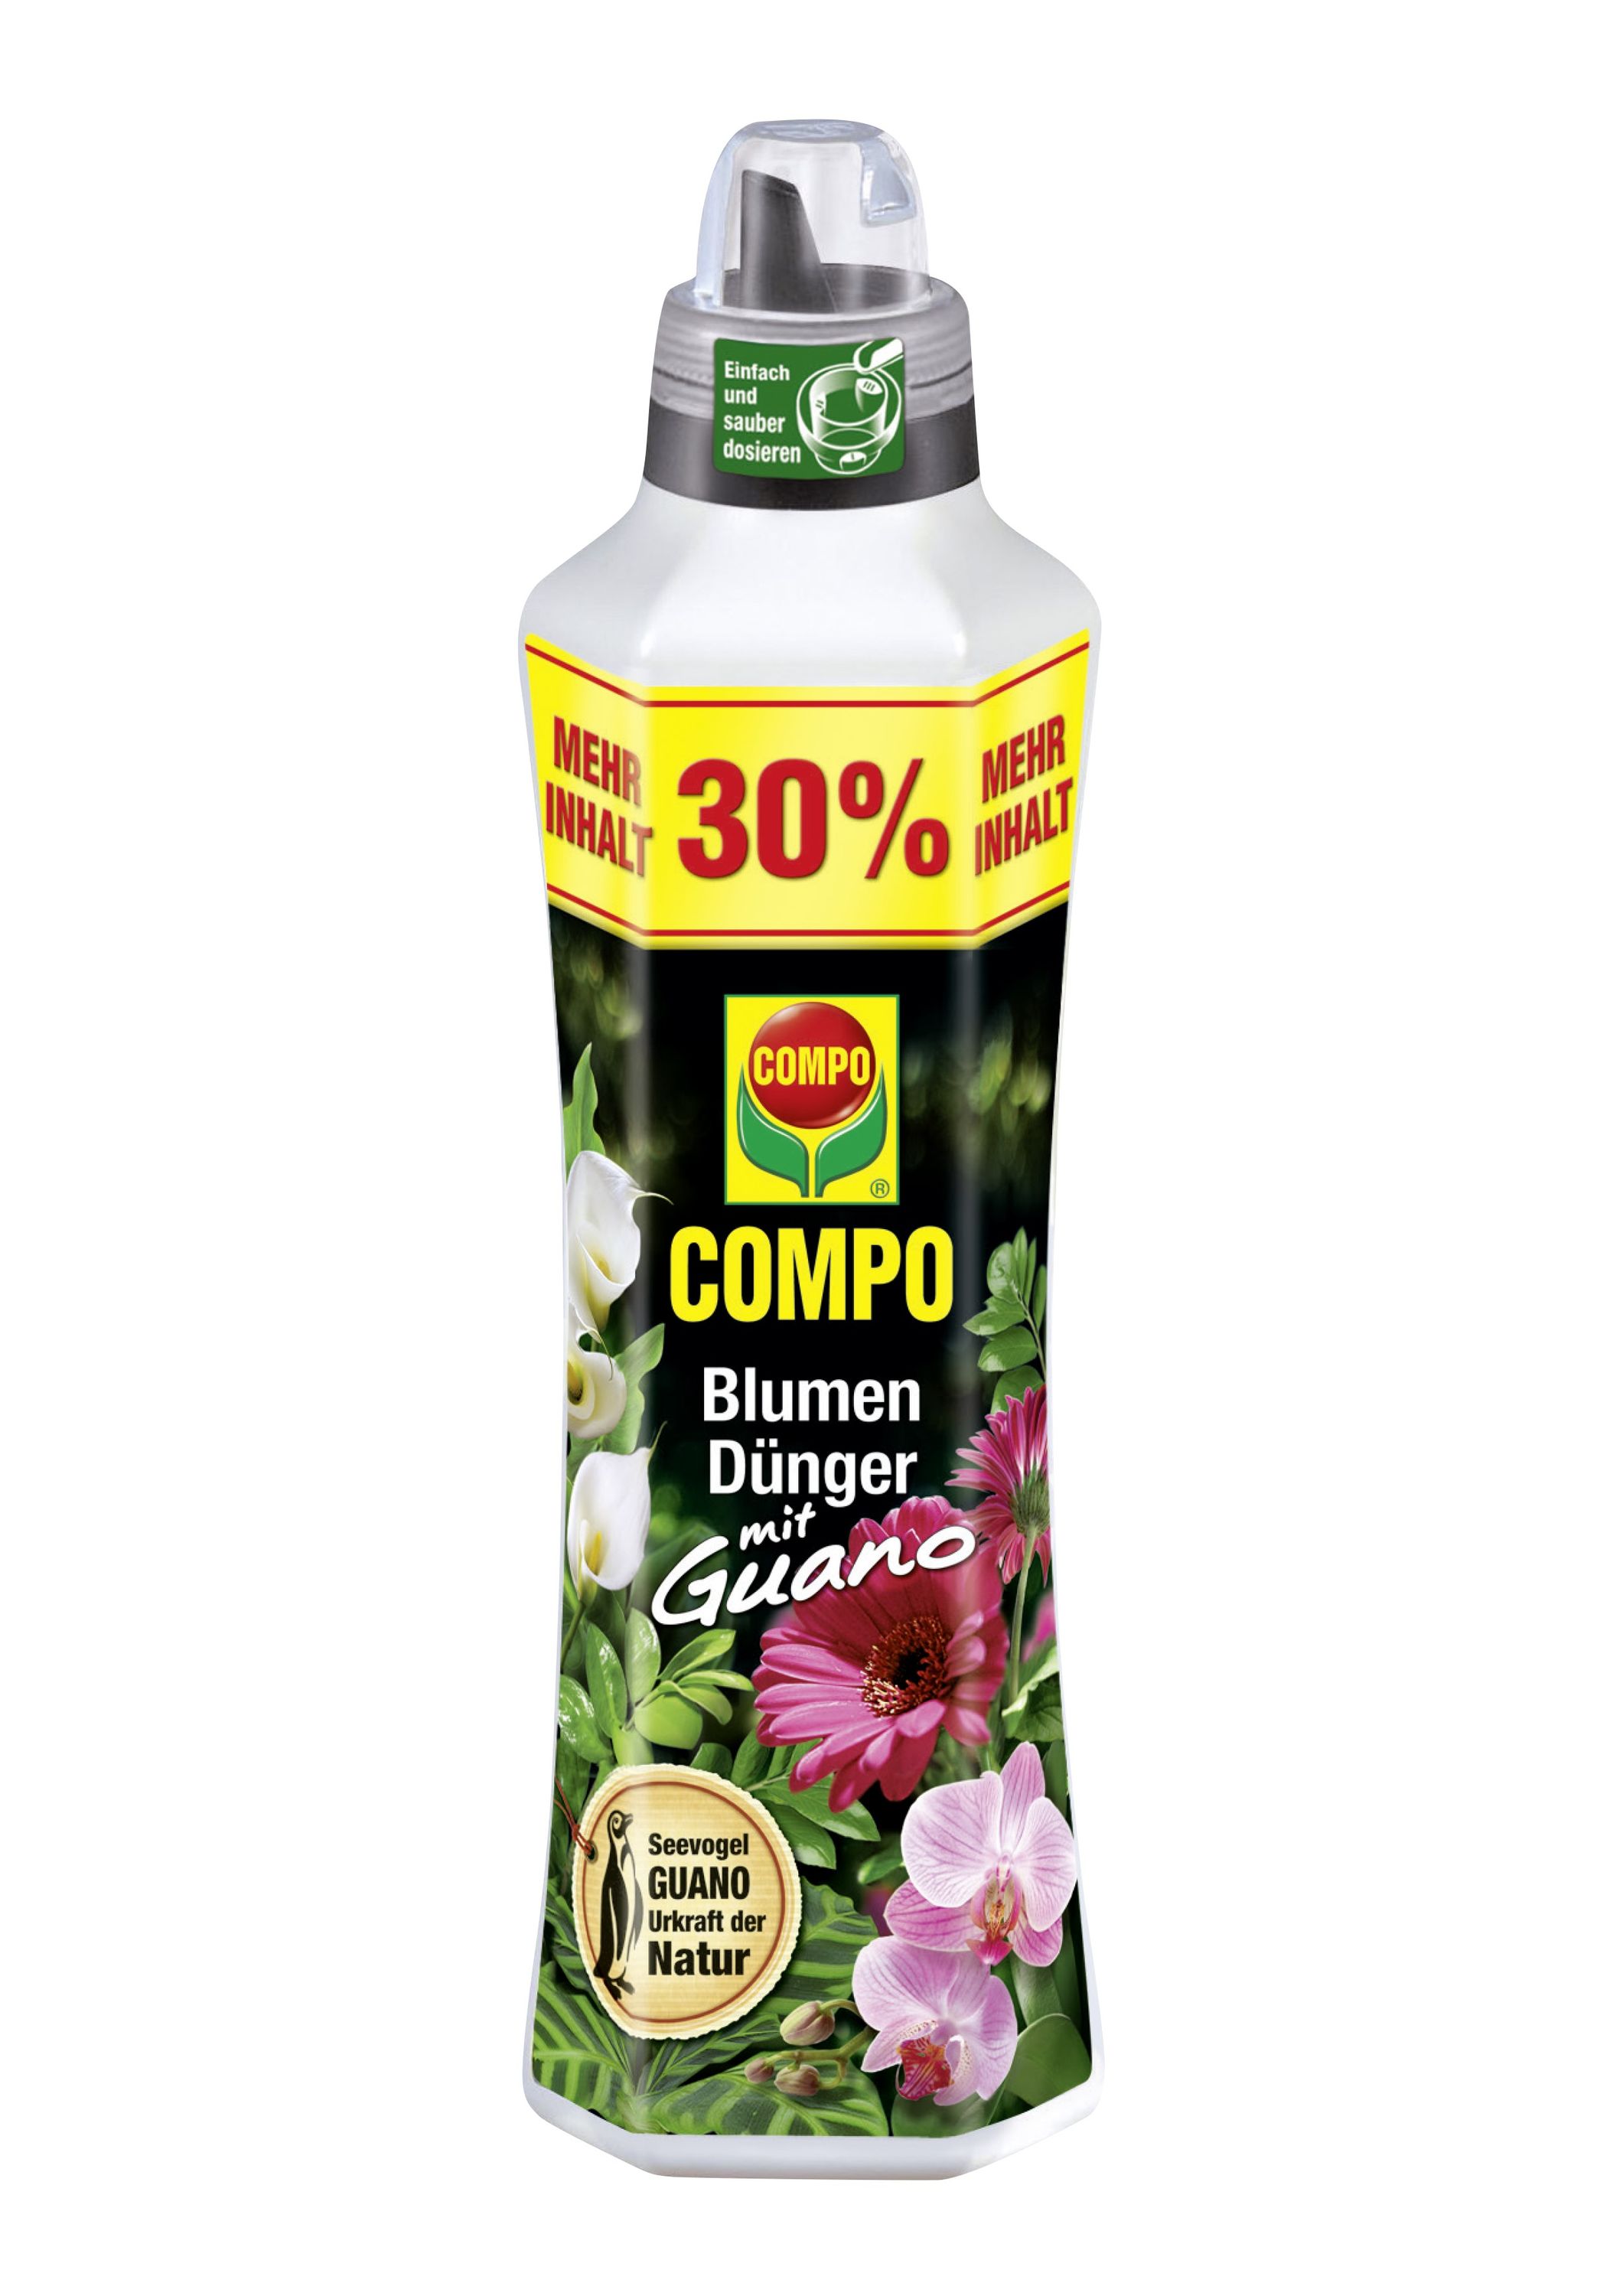 COMPO Blumendünger mit Guano, 1,3 Liter